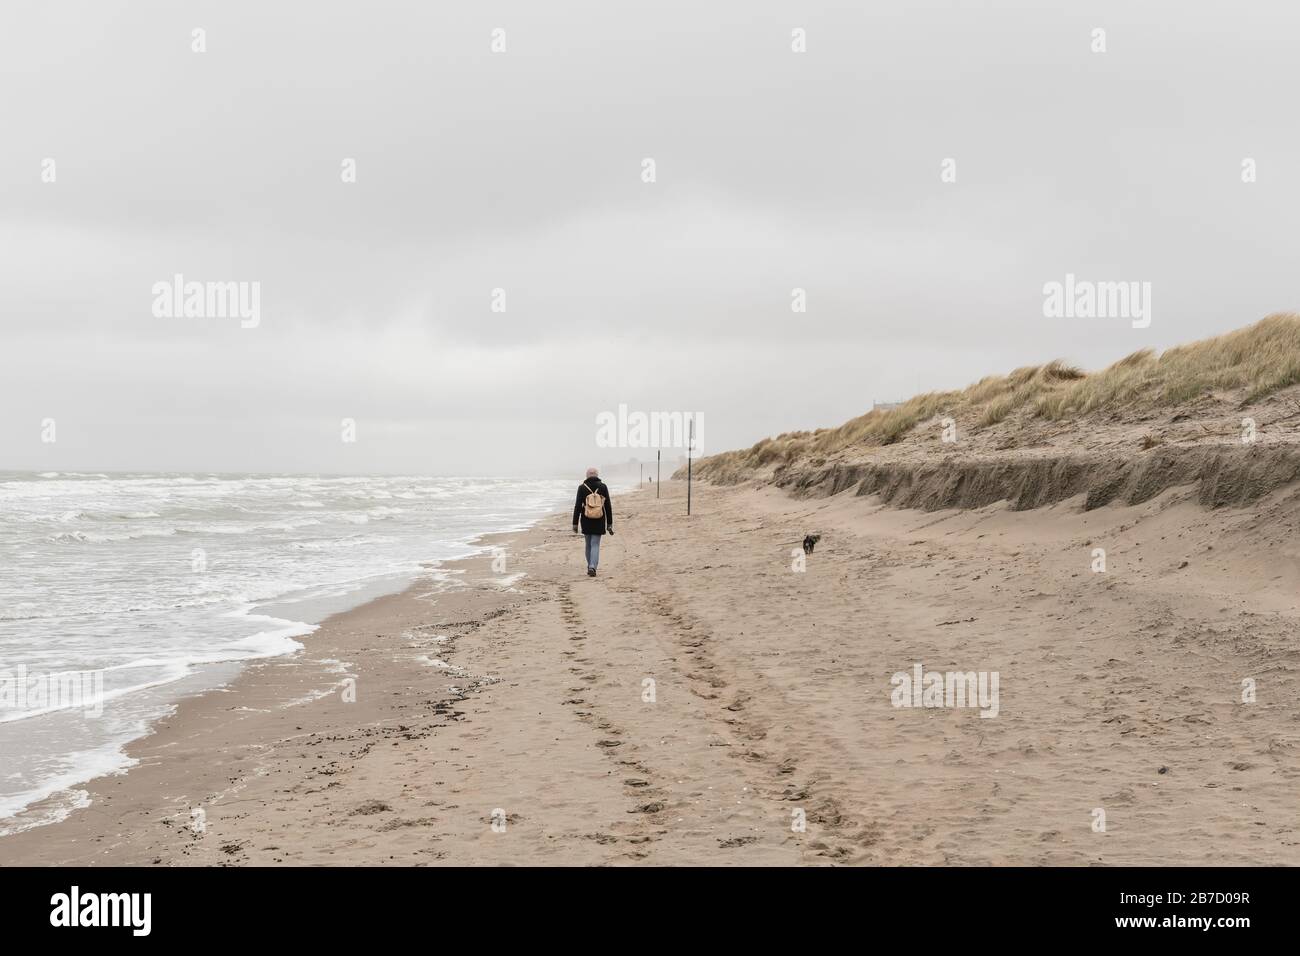 Koksijde, Belgien - 26. Februar 2020: Frau, die an einem kalten und windigen Tag am Strand spazieren geht Stockfoto